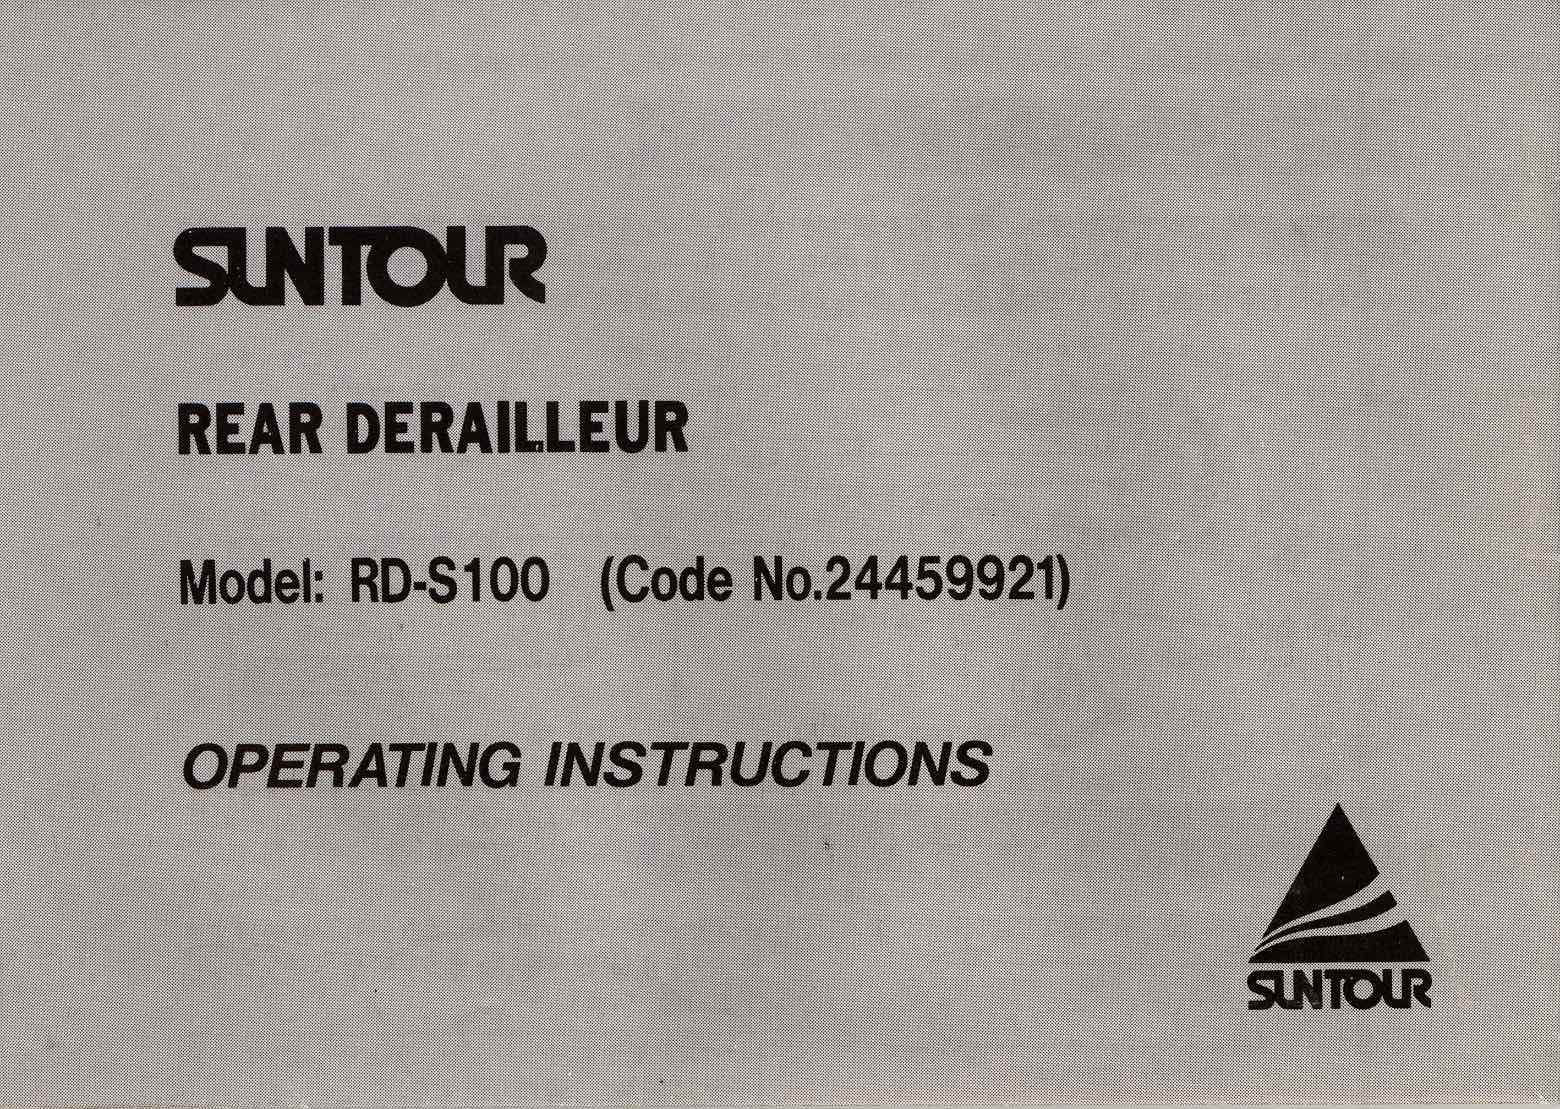 SunTour S-1 derailleur (S100) - instructions scan 1 main image